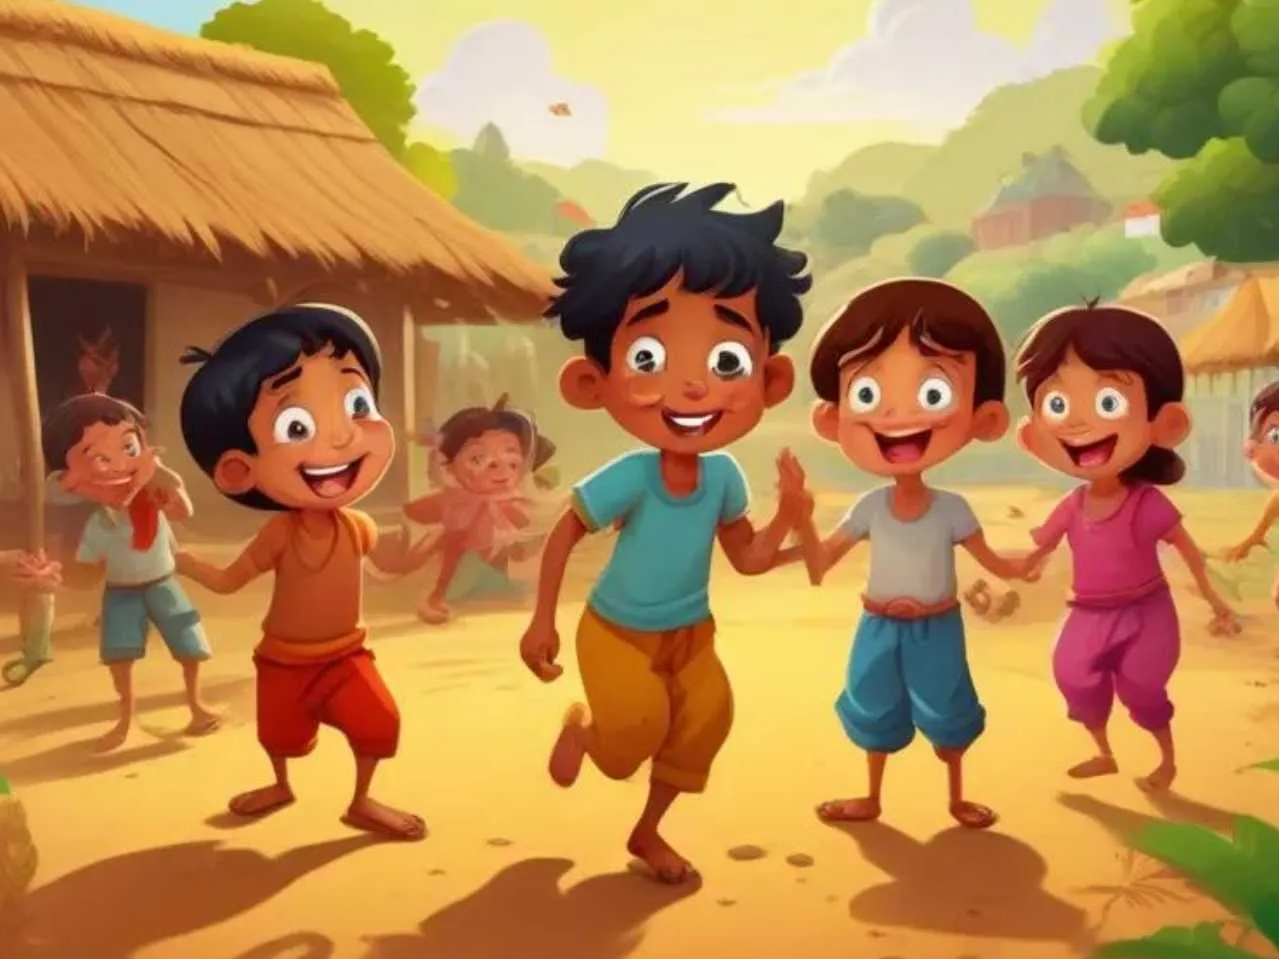 Cartoon image of village kids playing